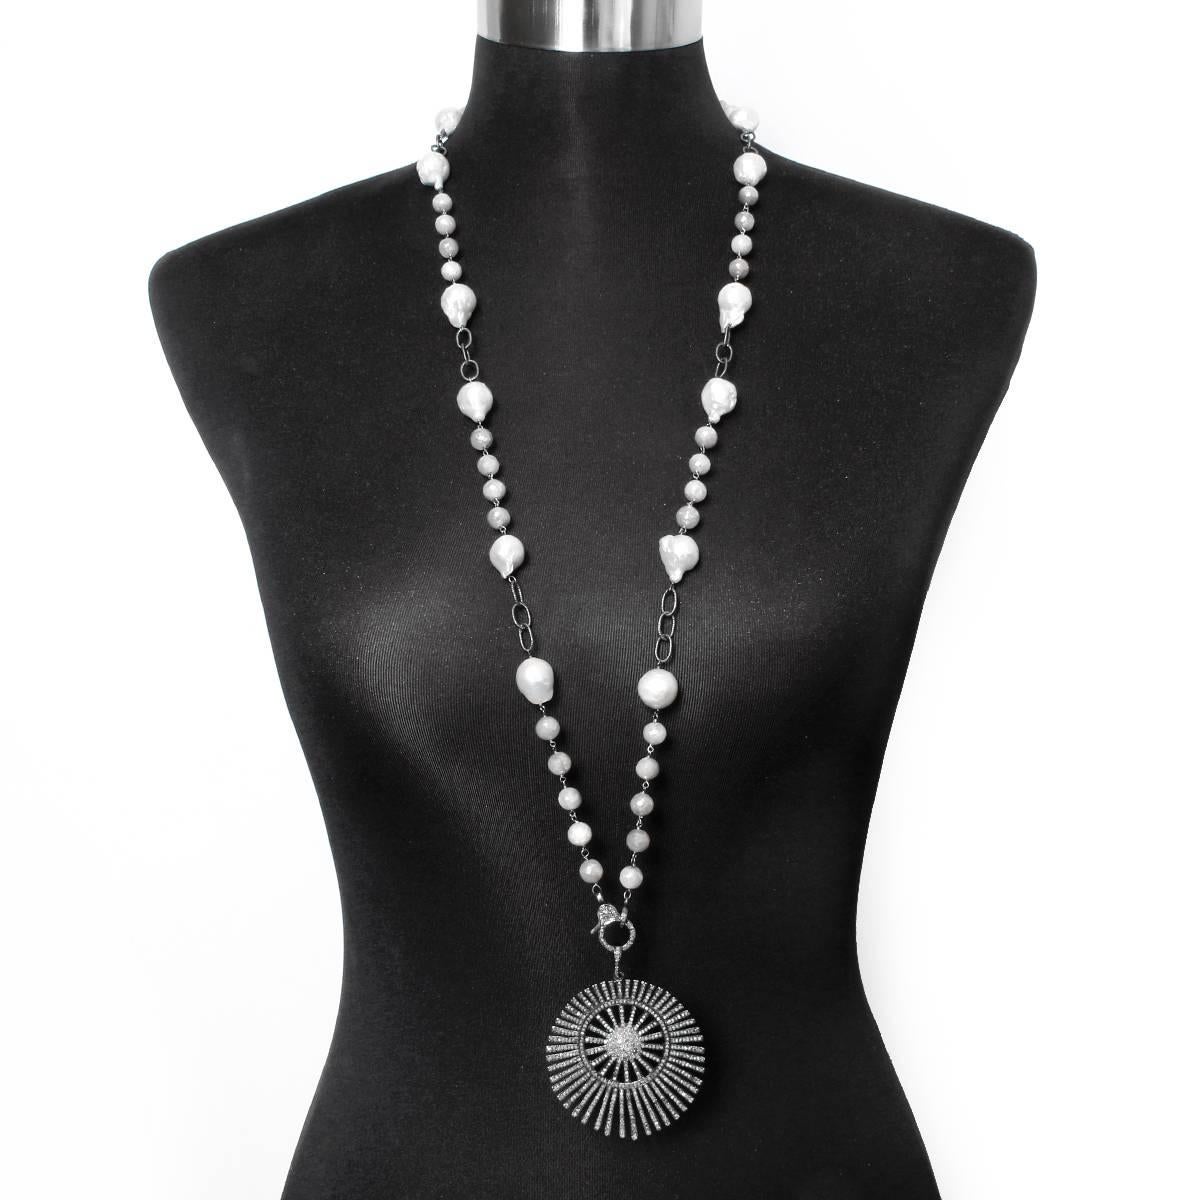 Diese Bohème-Halskette hat einen Sonnenschliff-Anhänger und einen Diamantverschluss. Beide sind in oxidiertem Silber an einer Kette aus grauem Mondstein und Süßwasserperlen gefasst. Anhänger einschließlich Verschluss misst ca. 3-1/4 Zoll in der